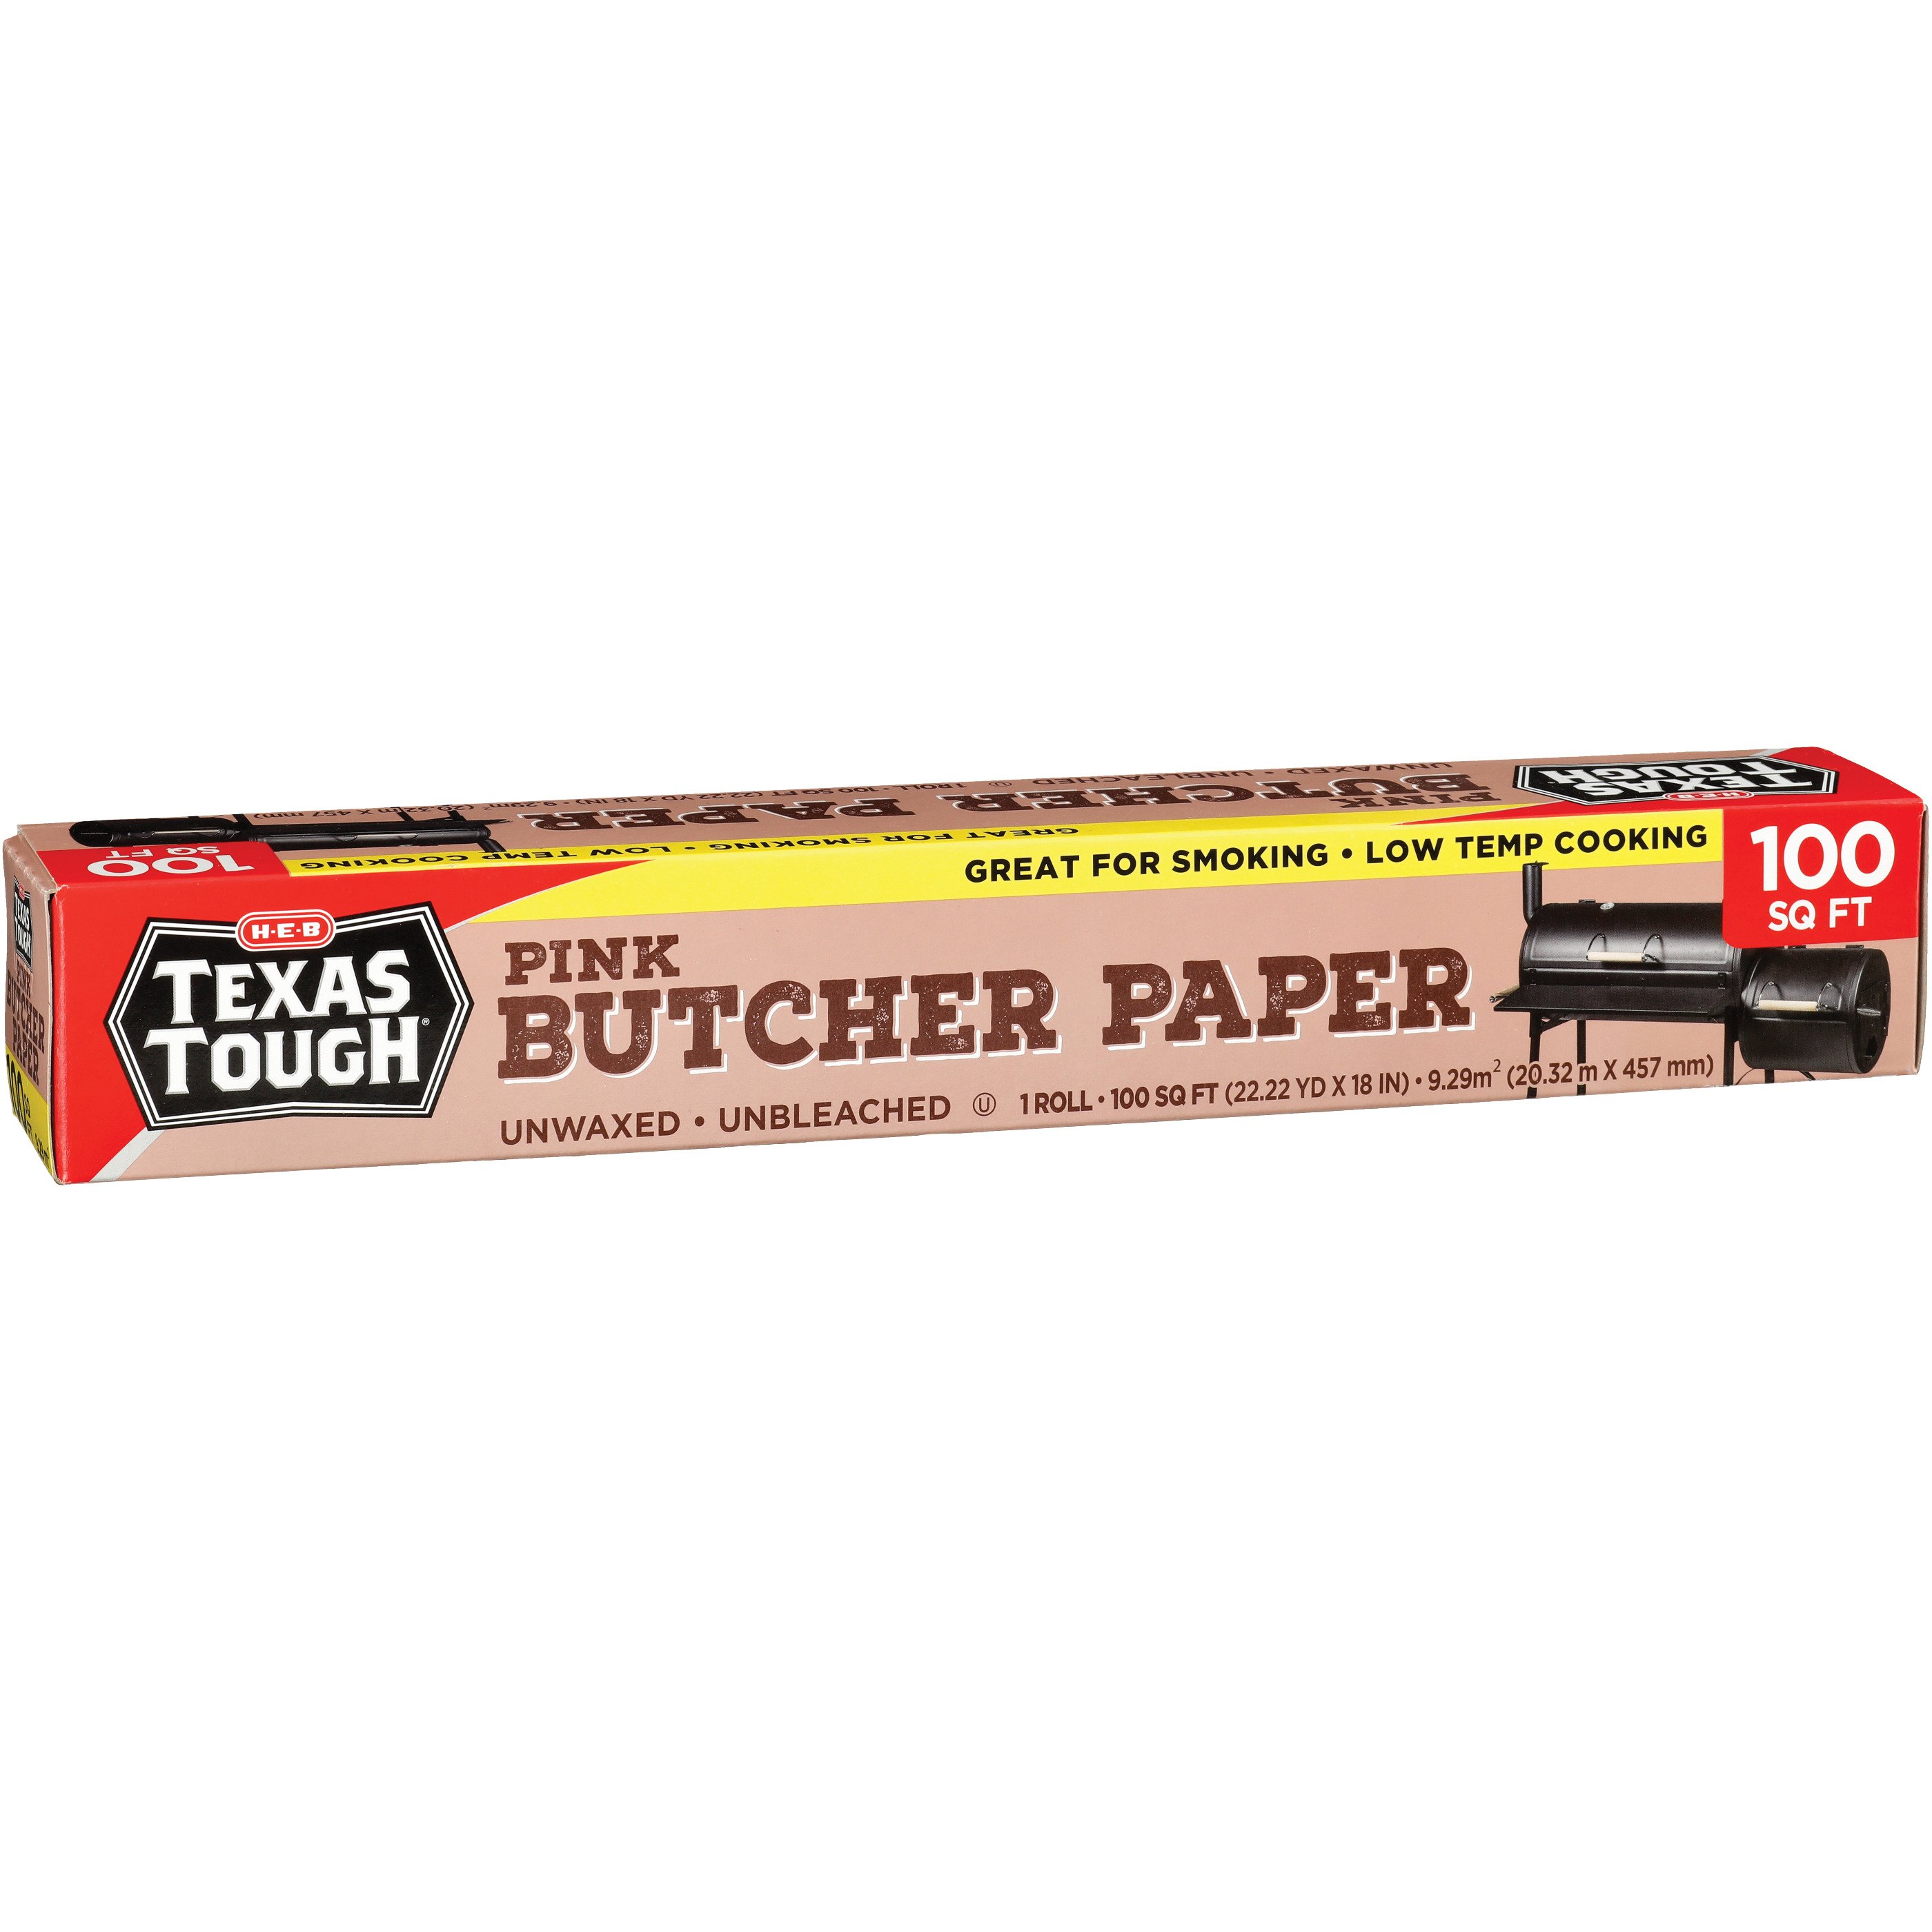 H-E-B Texas Tough Pink Butcher Paper - Shop Foil & Plastic Wrap at H-E-B